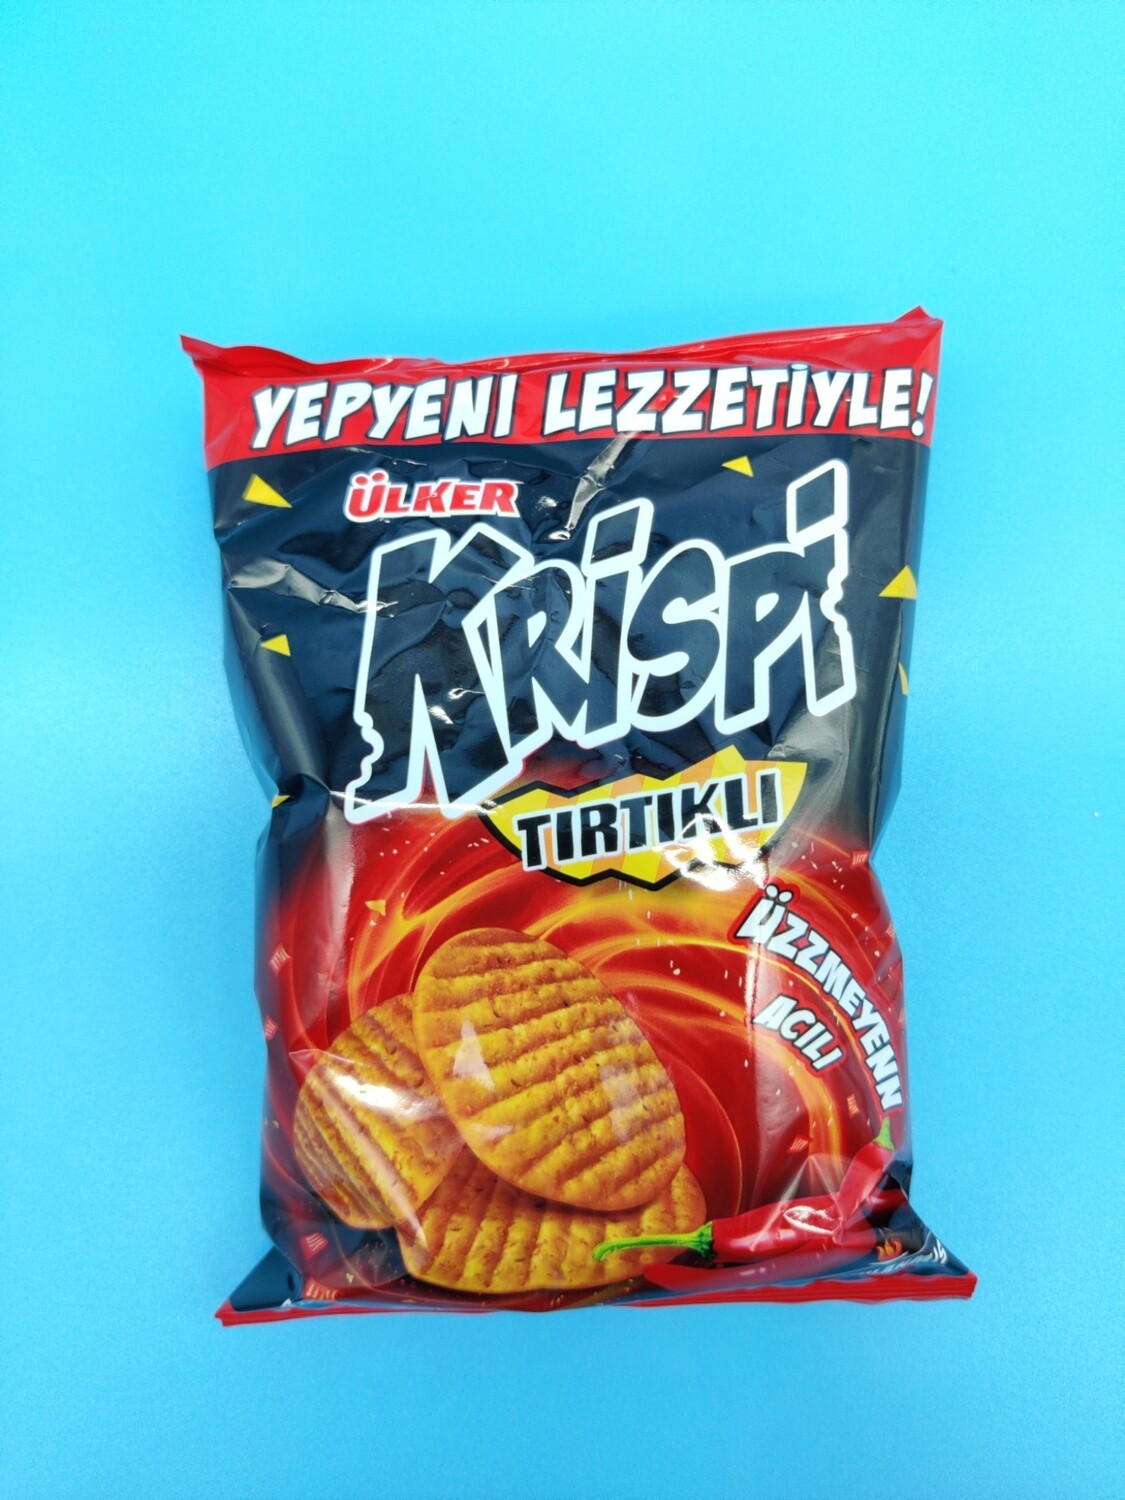 ULKER Krispi Round Cracker Hot 48g (Halal)